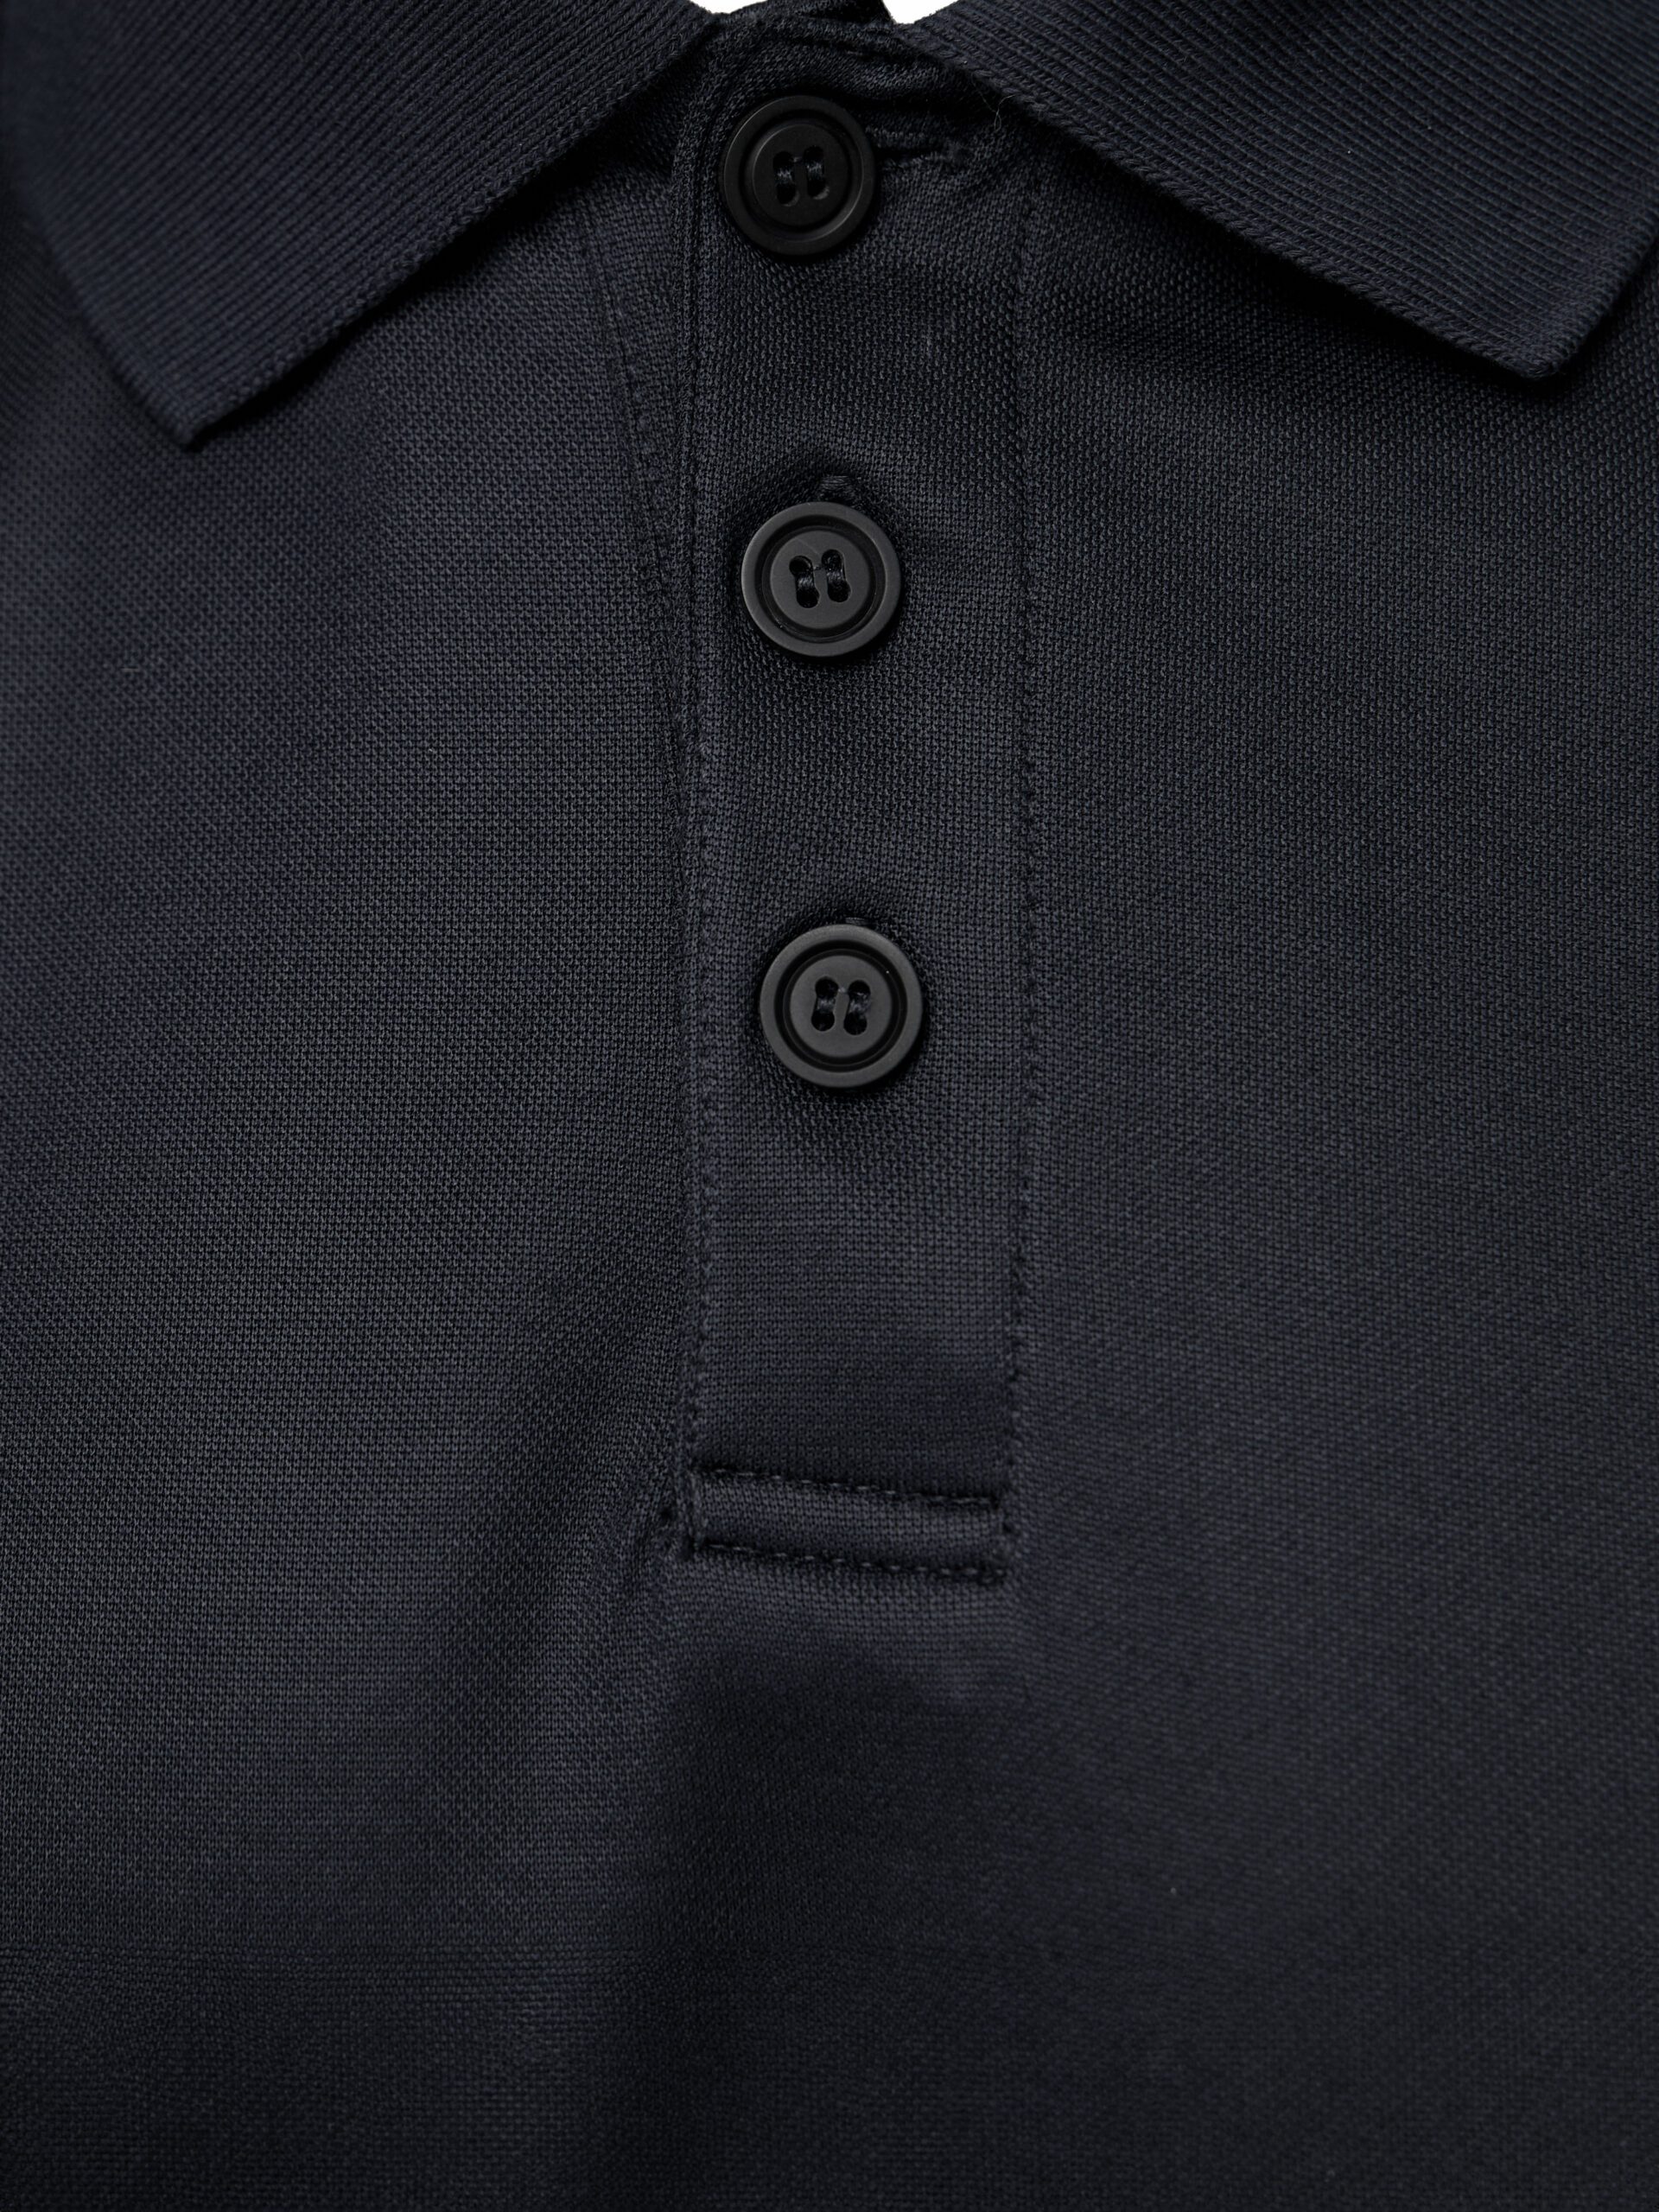 PUMA Workwear Essentials Polo Workwear Shirt | Men\'s PUMA